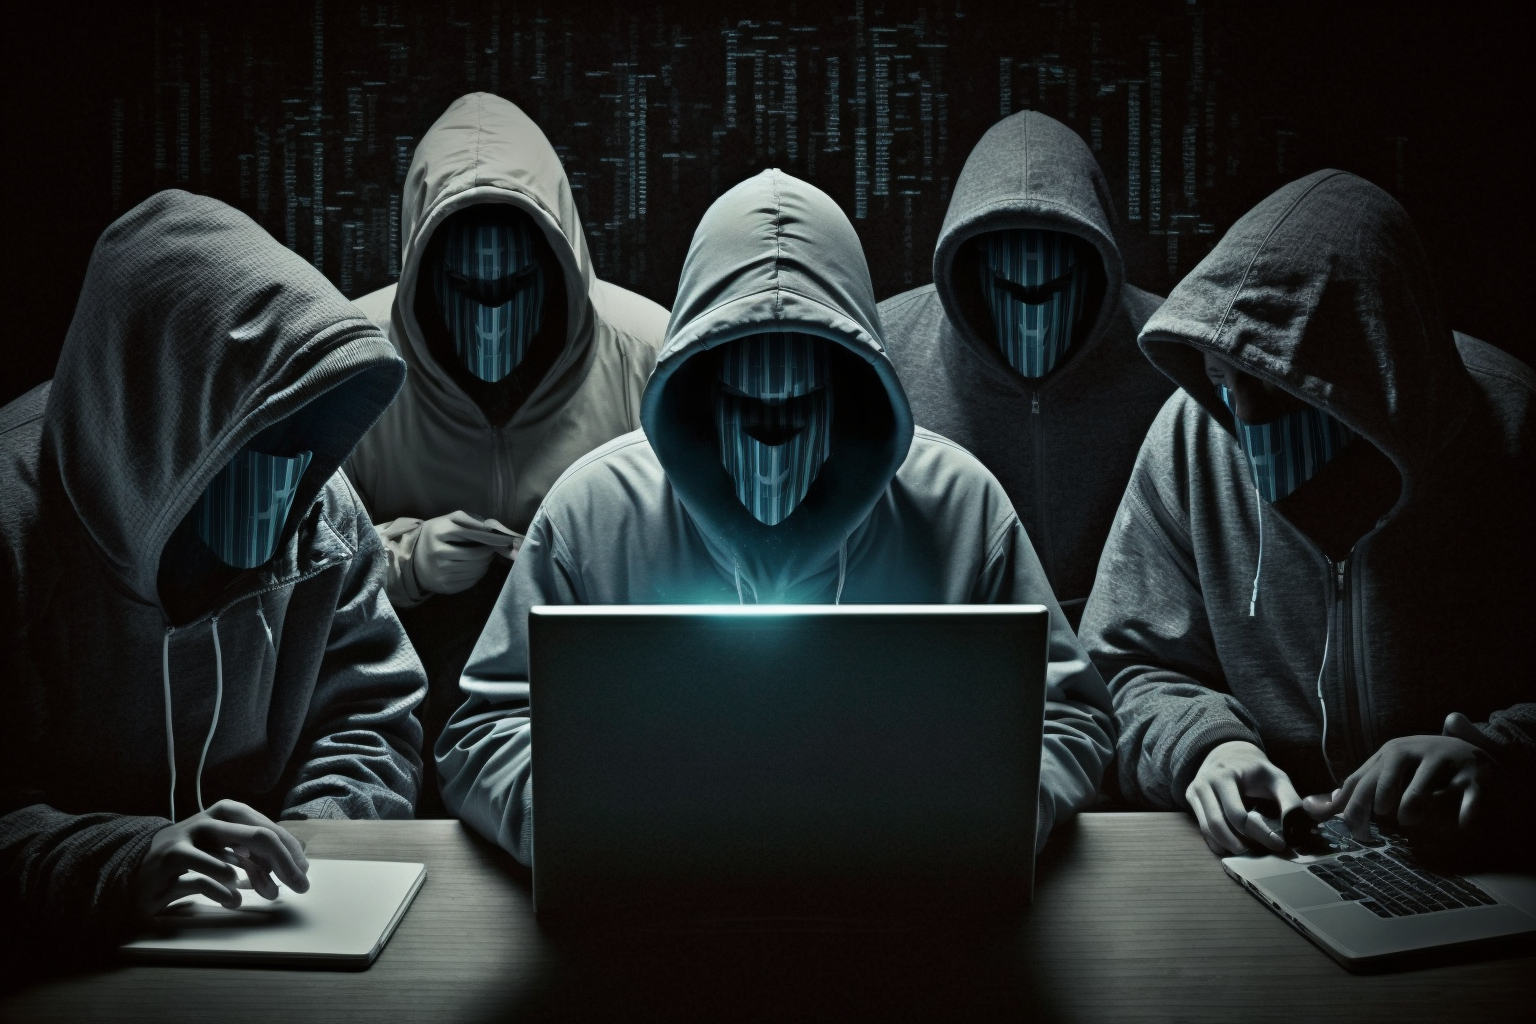 사이버 공격을 하는 해커 집단 사진